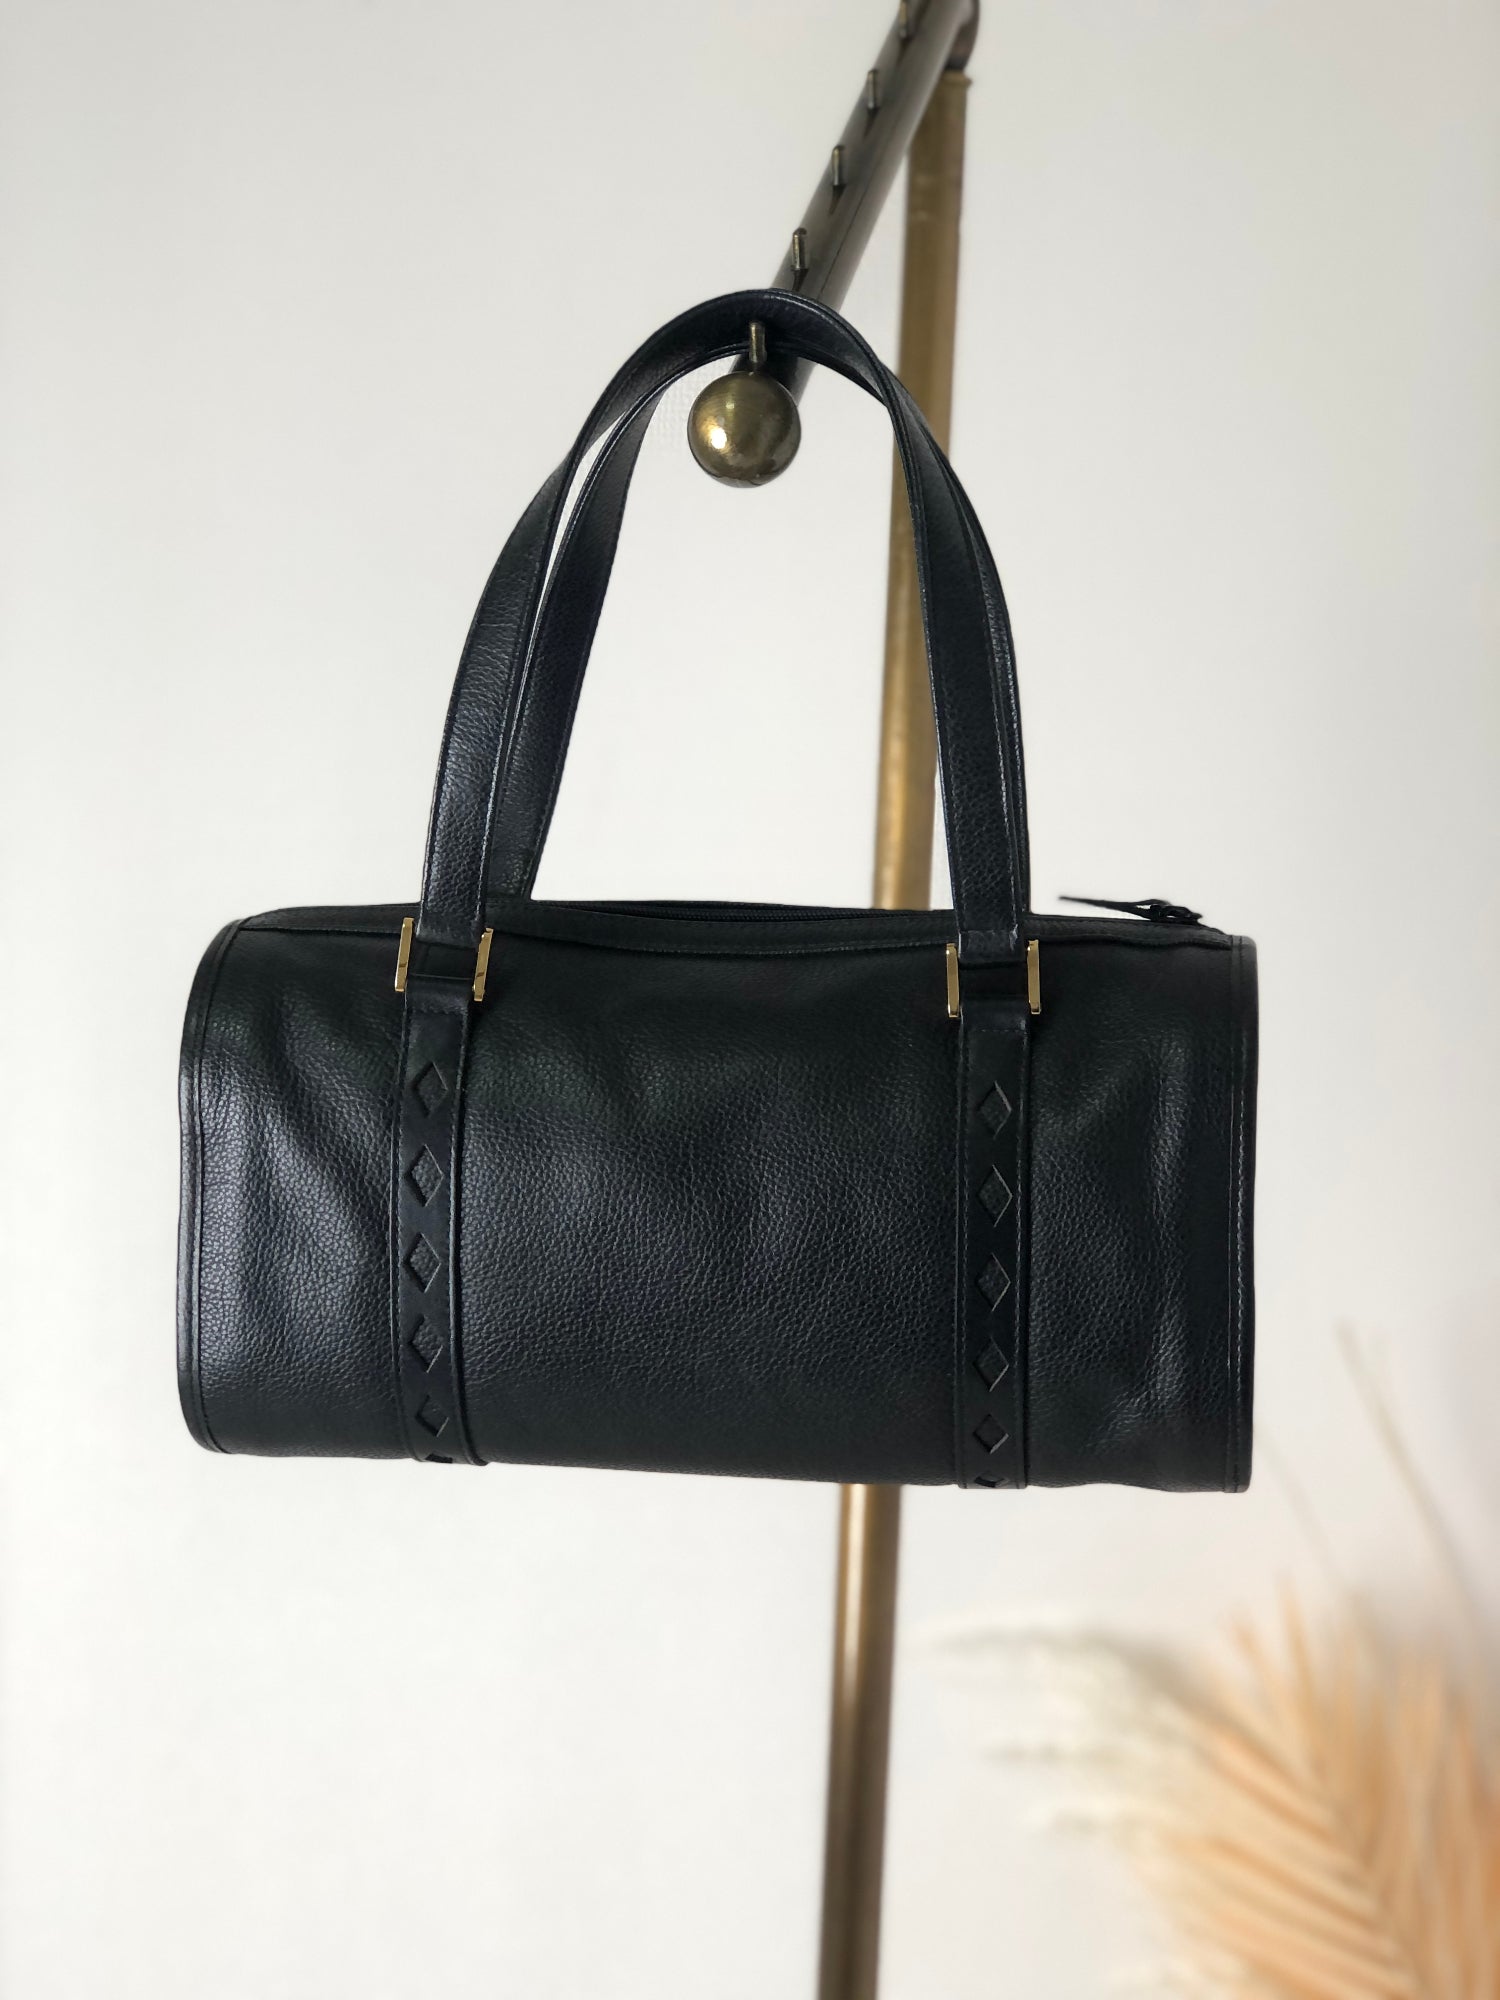 YVES SAINT LAURENT Sac de Jour Leather Shoulder Bag Black